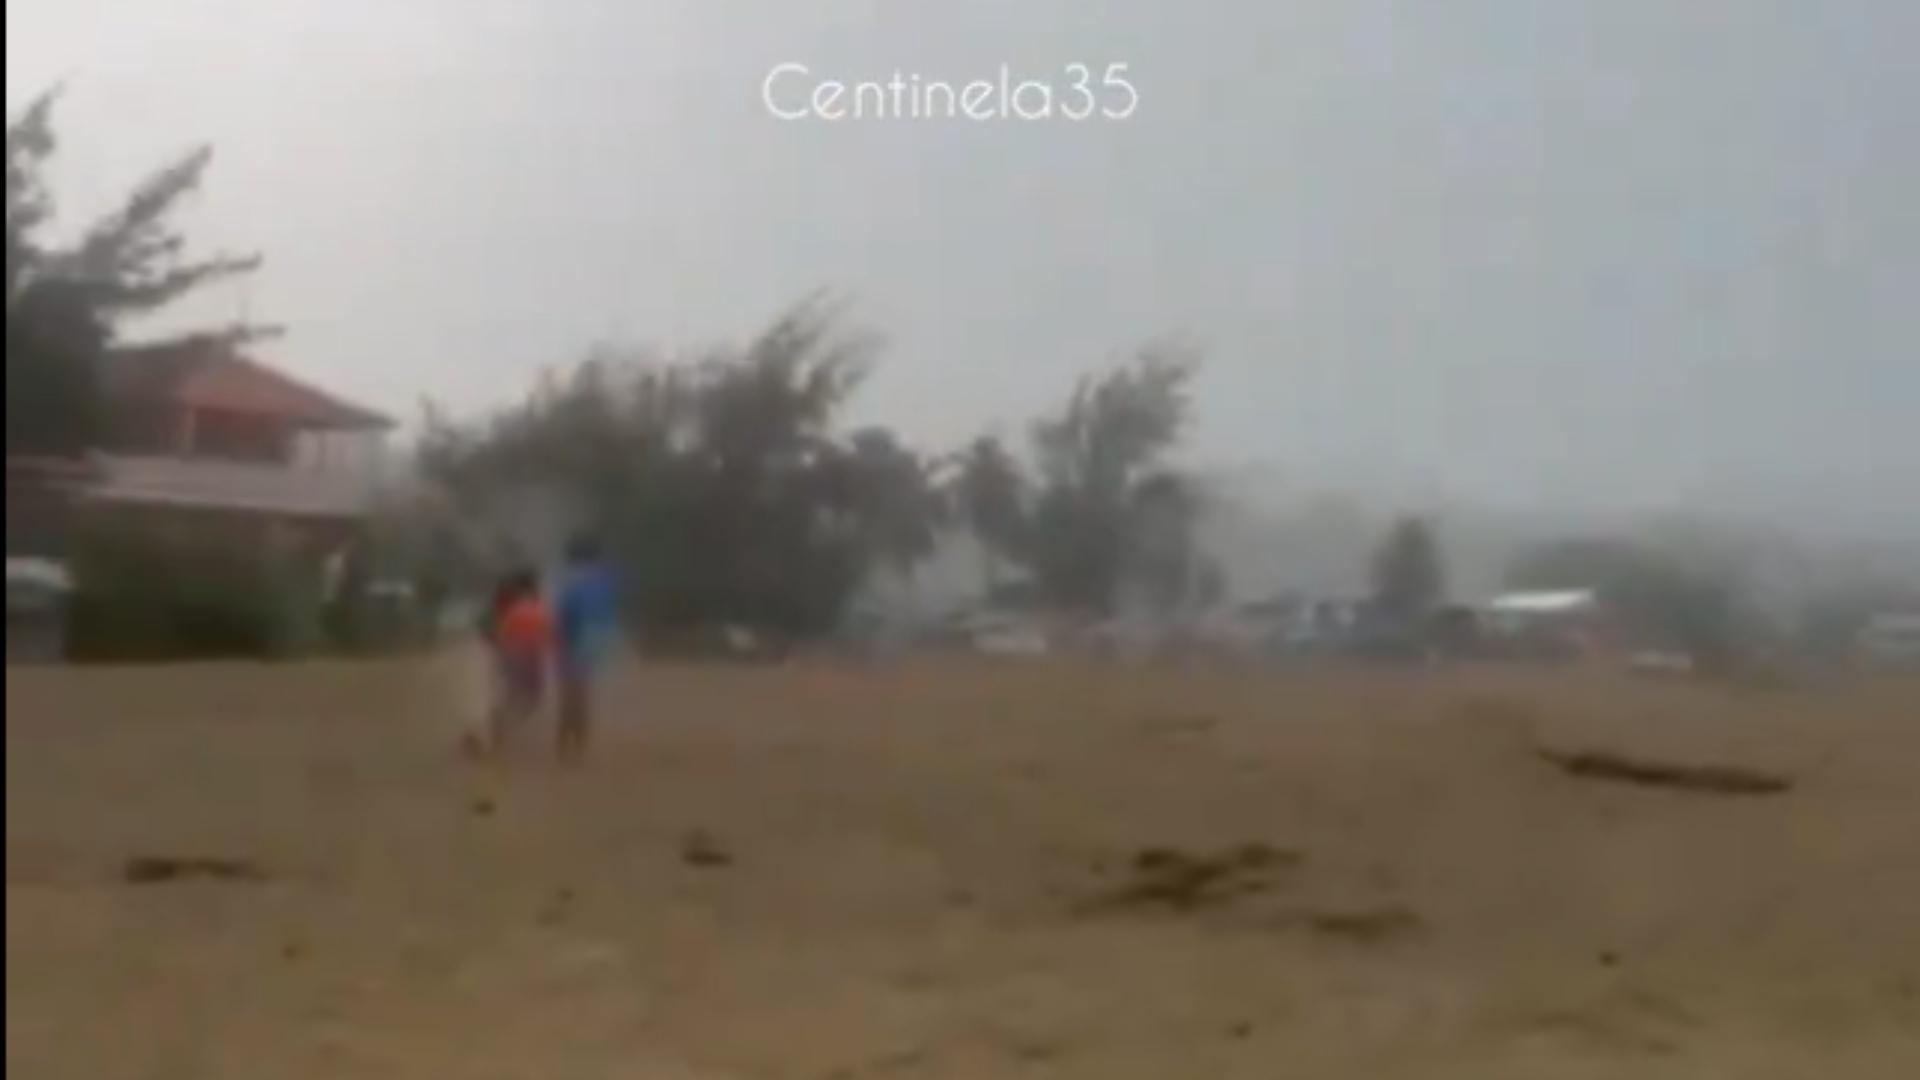 Video | Momento Exacto en que Rayo Cae sobre Tres Niños en una Playa y se Desploman